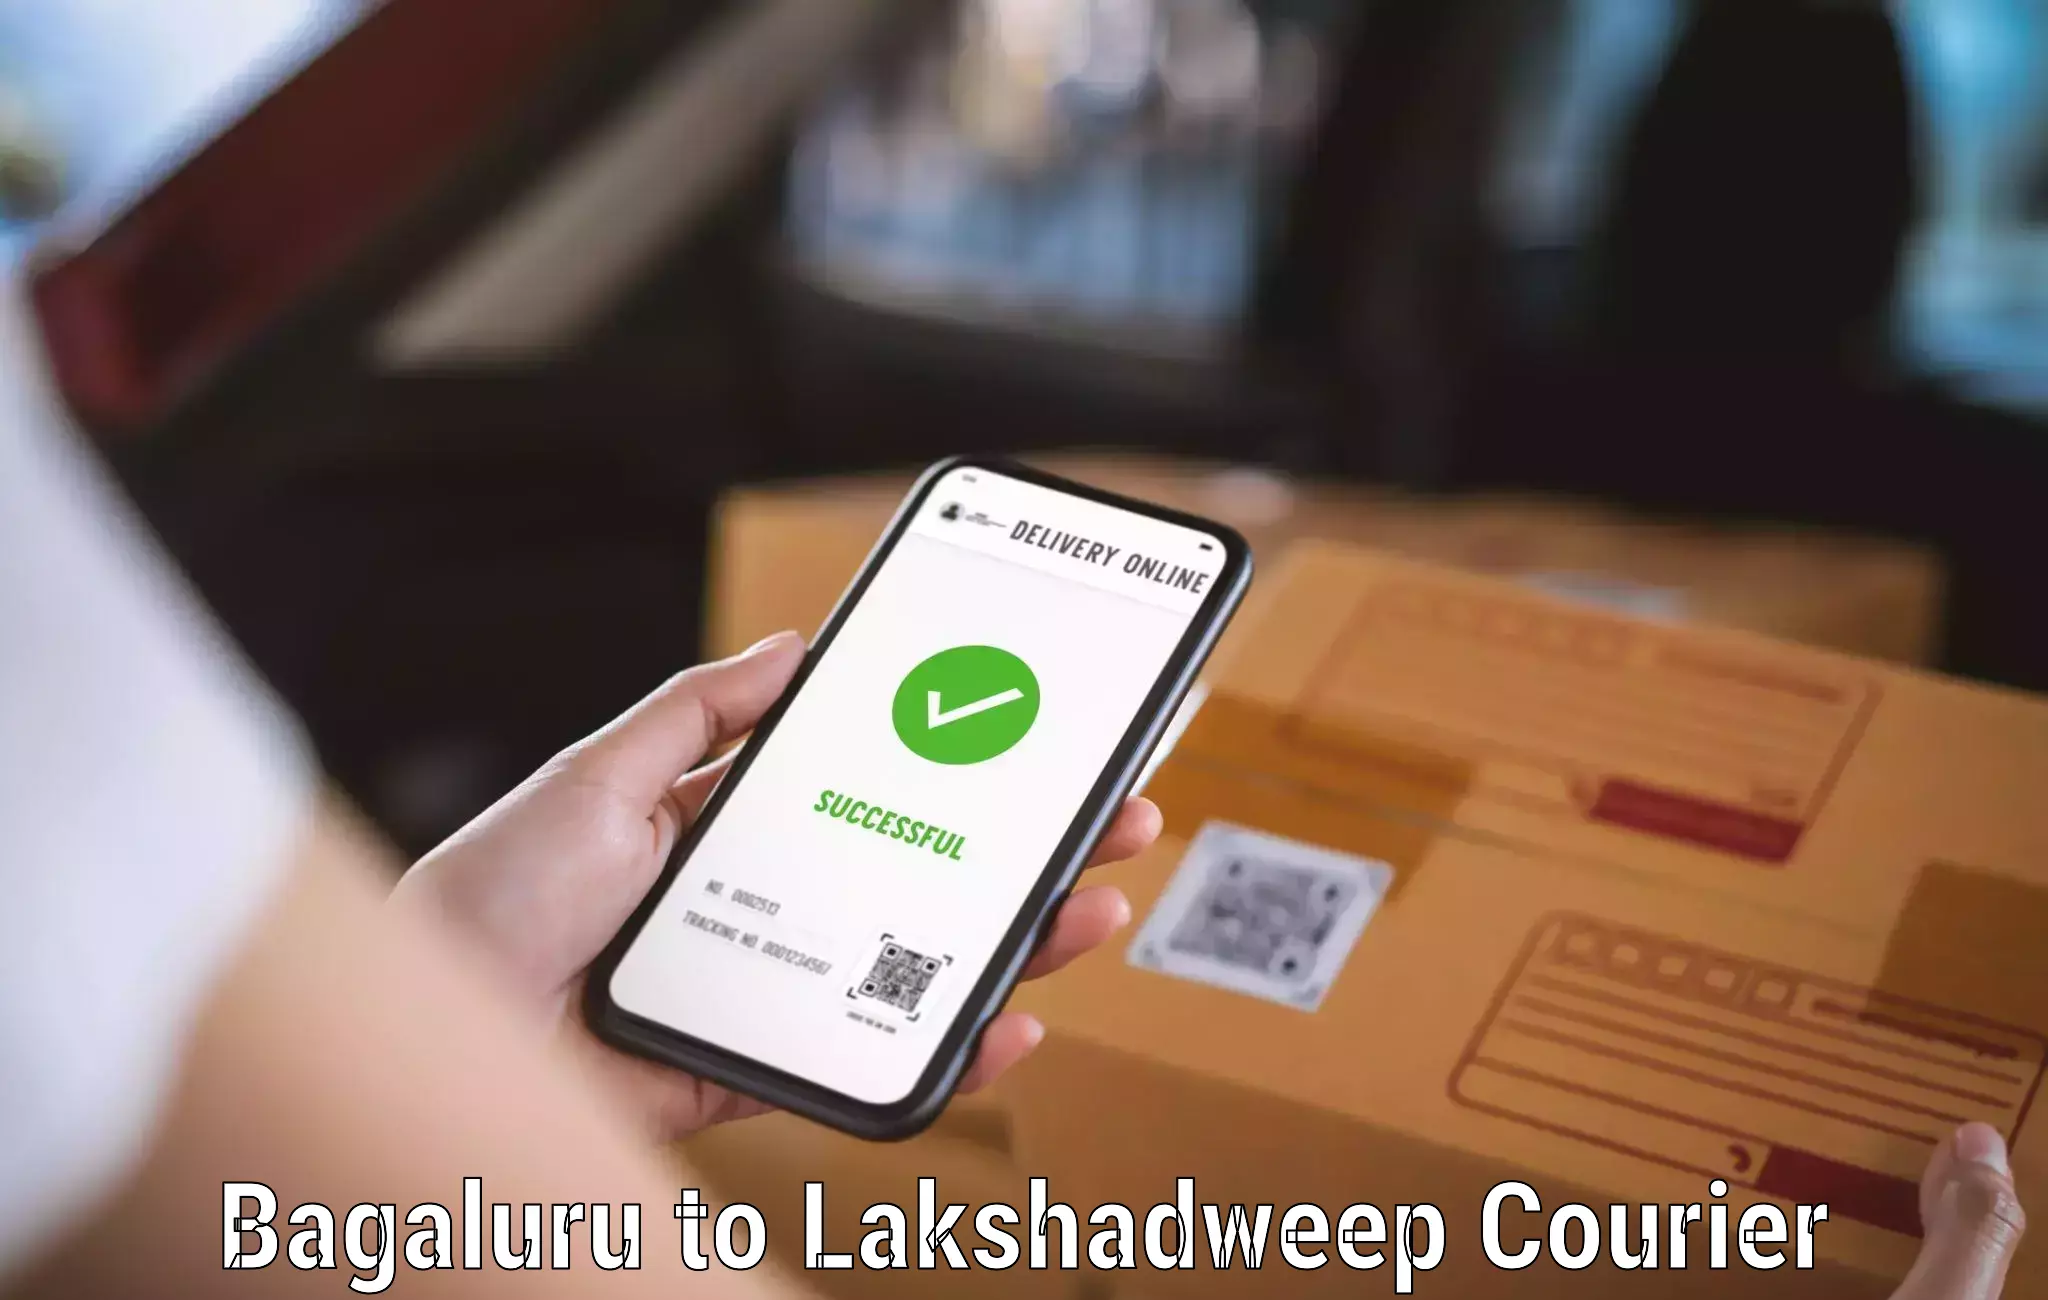 High-priority parcel service Bagaluru to Lakshadweep